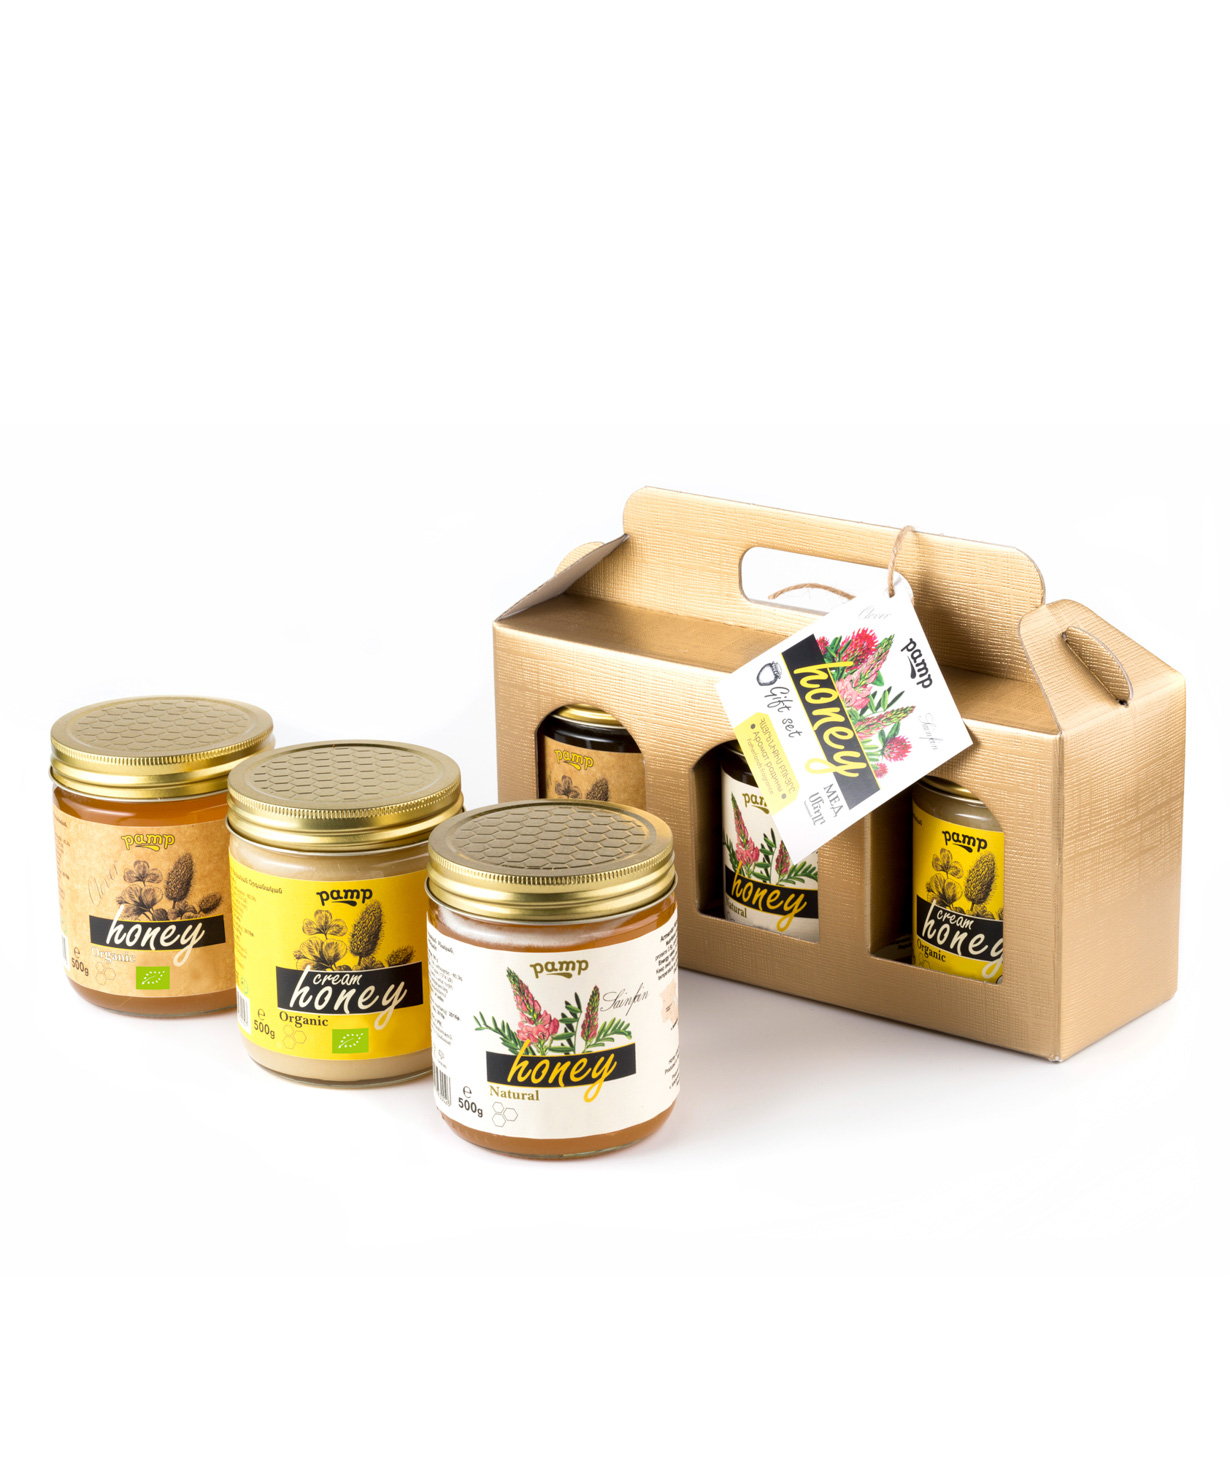 Հավաքածու «Pamp Honey» մեղրների, ստվարաթղթե պայուսակով